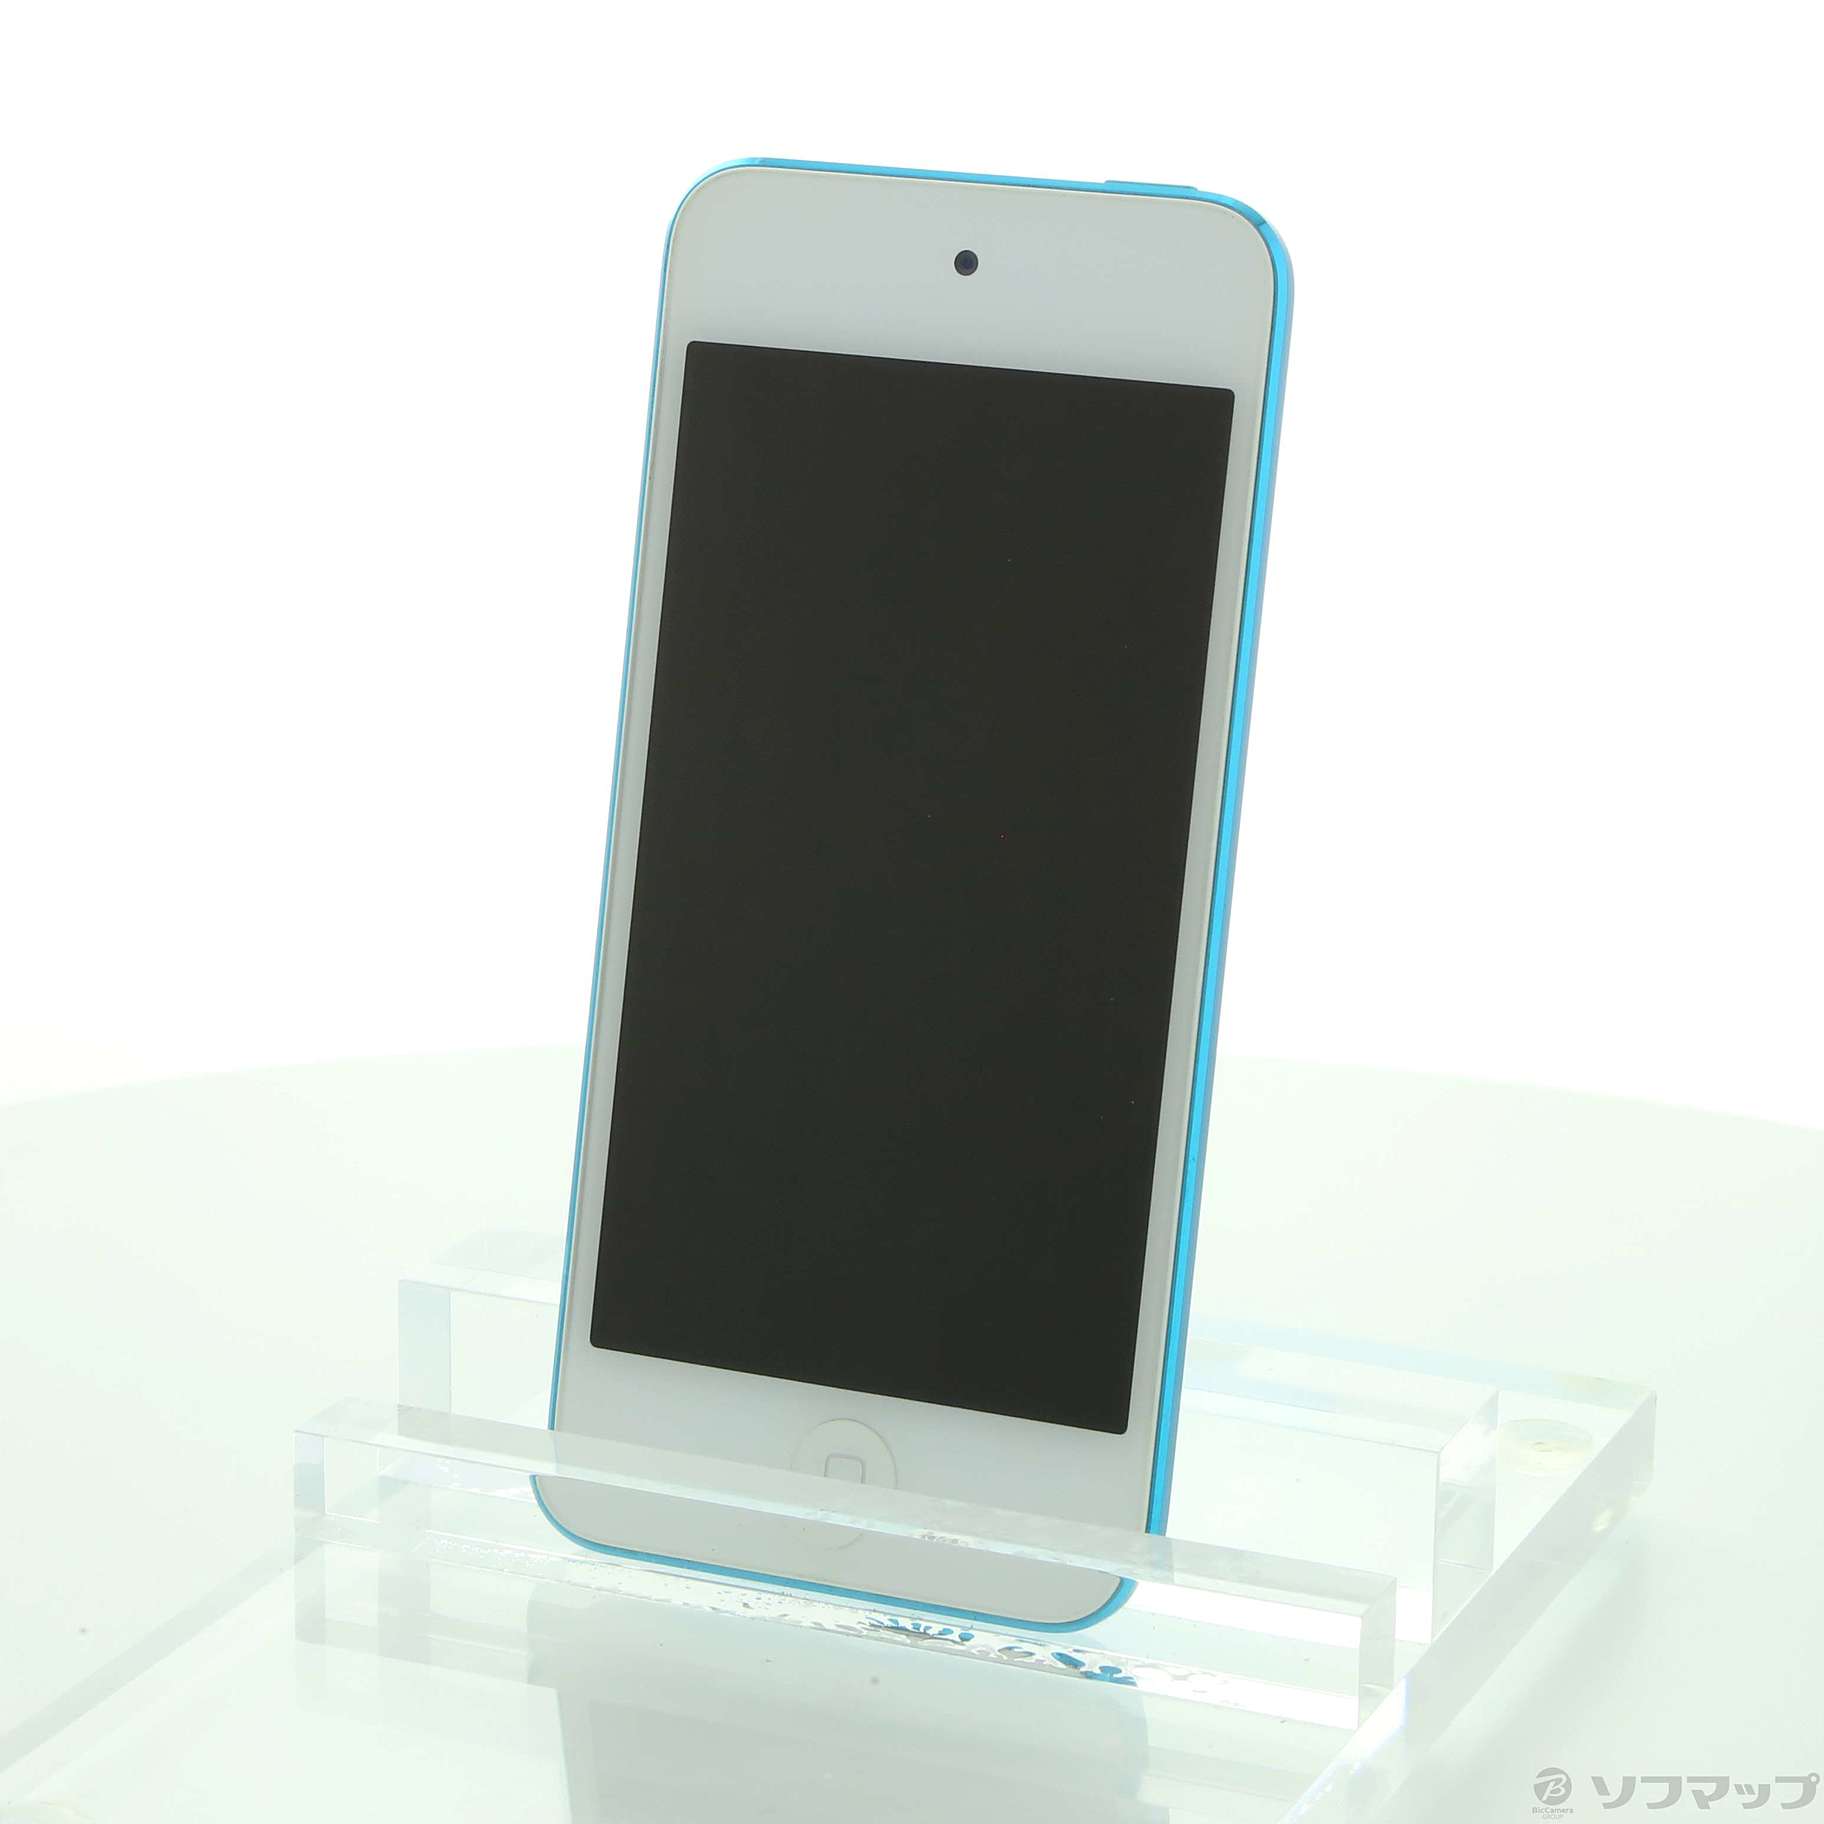 中古 Ipod Touch第5世代 メモリ16gb ブルー Mgg32j A 01 29 金 新入荷 リコレ ソフマップの中古通販サイト